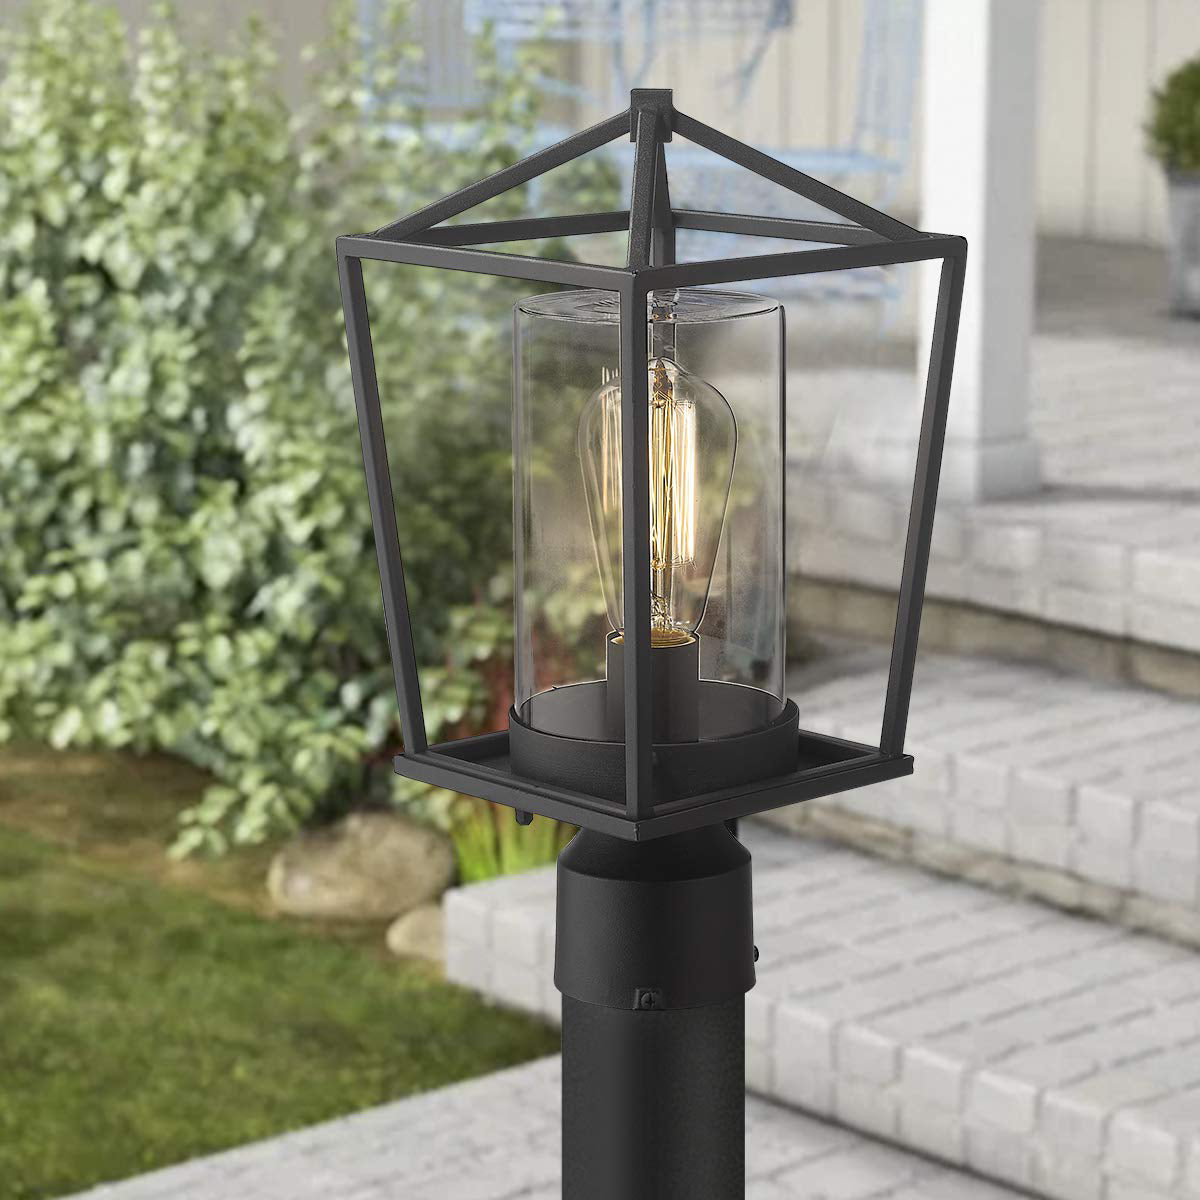 
                  
                    Emliviar Outdoor Light Post Lantern in Black Finish,20065P BK
                  
                